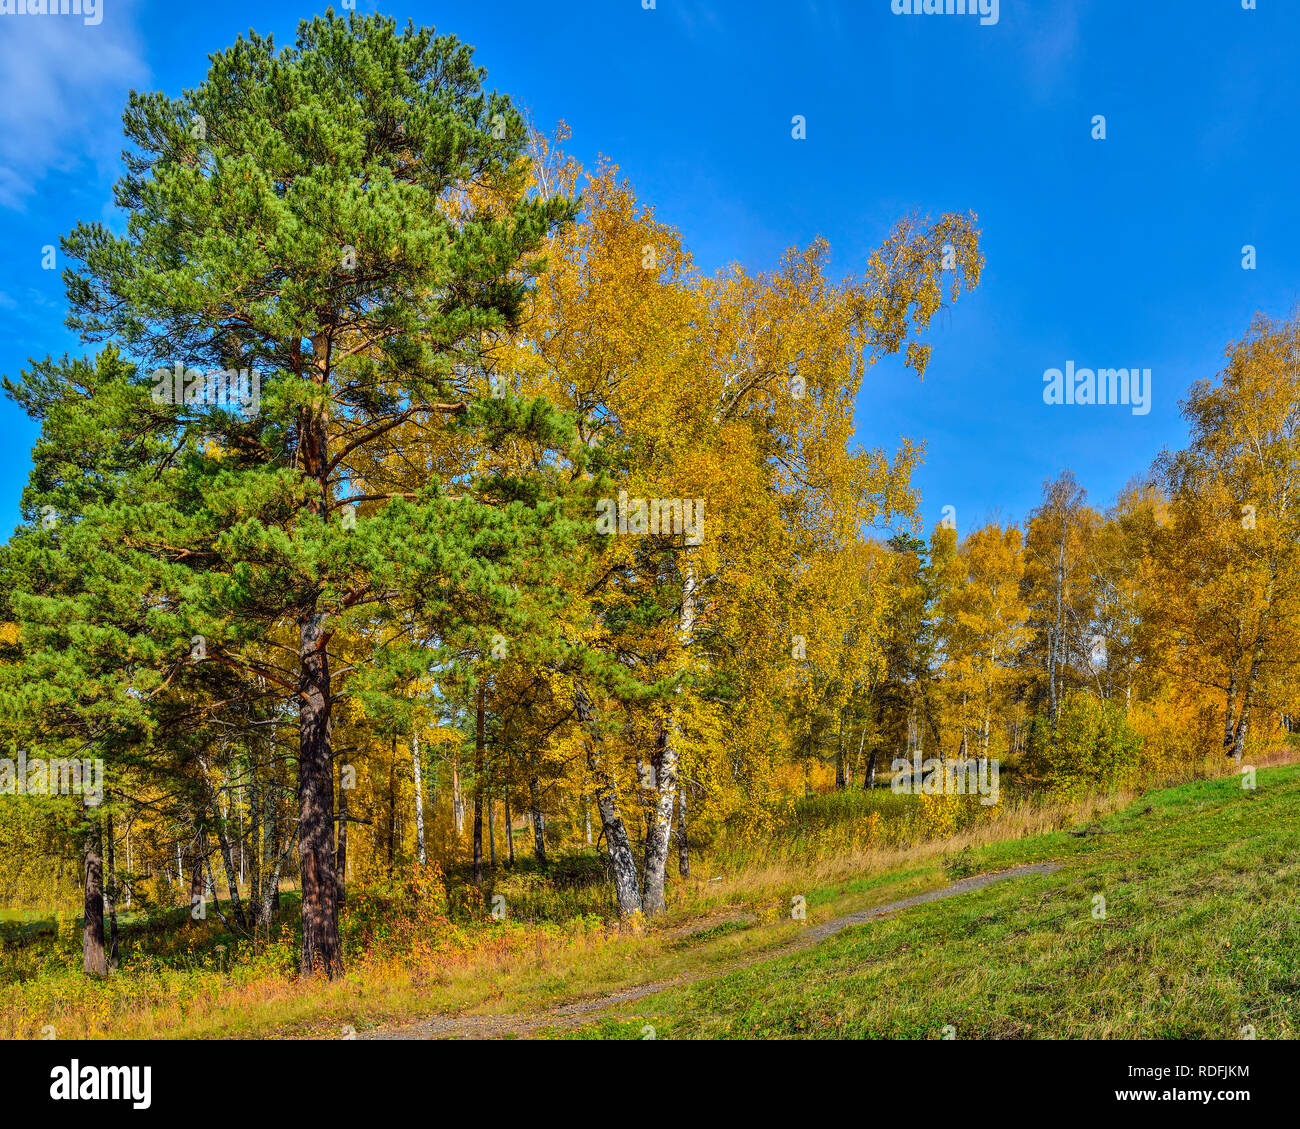 Schöne romantische Landschaft mit goldenen Blätter der Birken und grünen Kiefern im Herbst Wald auf einem Hügel - helle Herbst Hintergrund bei warmen und sonnigen septemb Stockfoto